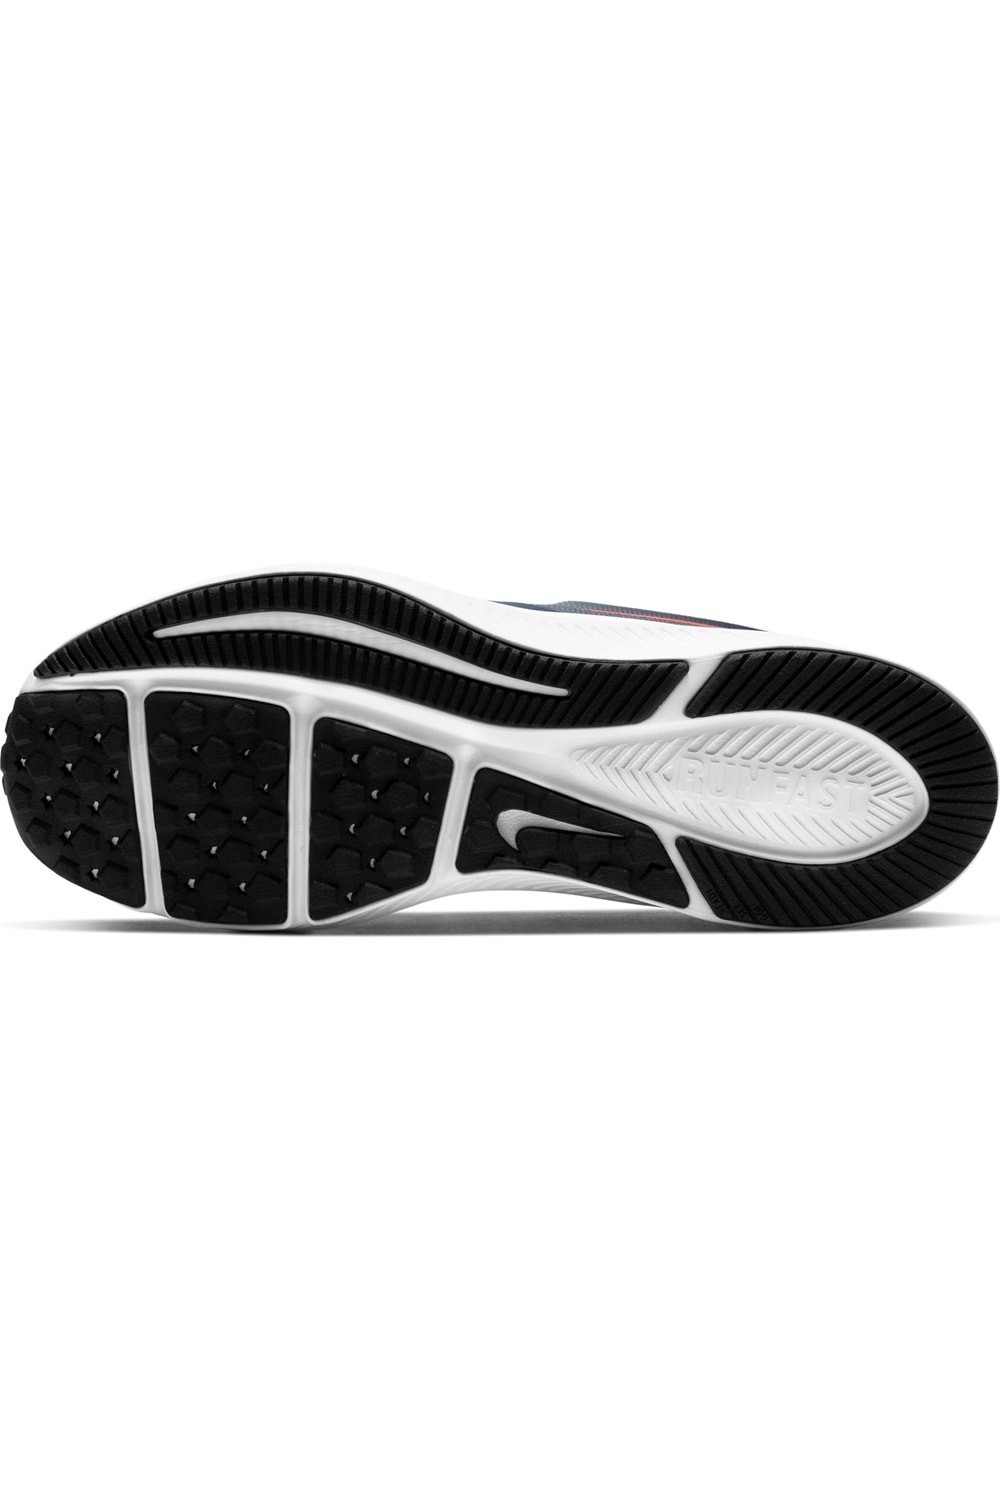 Nike Star Runner 2 (GS) Genç Koşu&Yürüyüş Ayakkabısı AQ3542-405